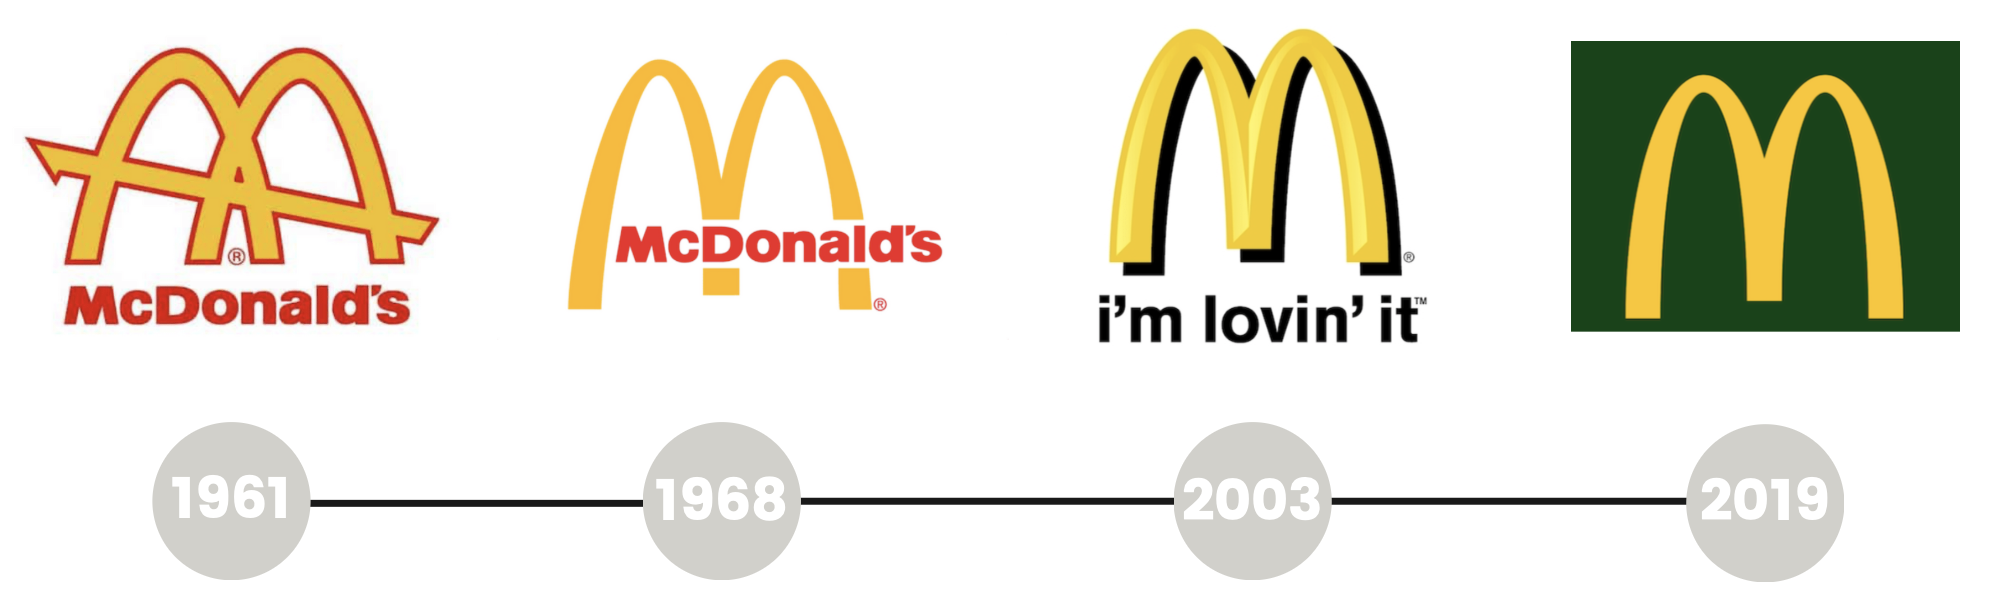 le logo mcdonalds au fil des années